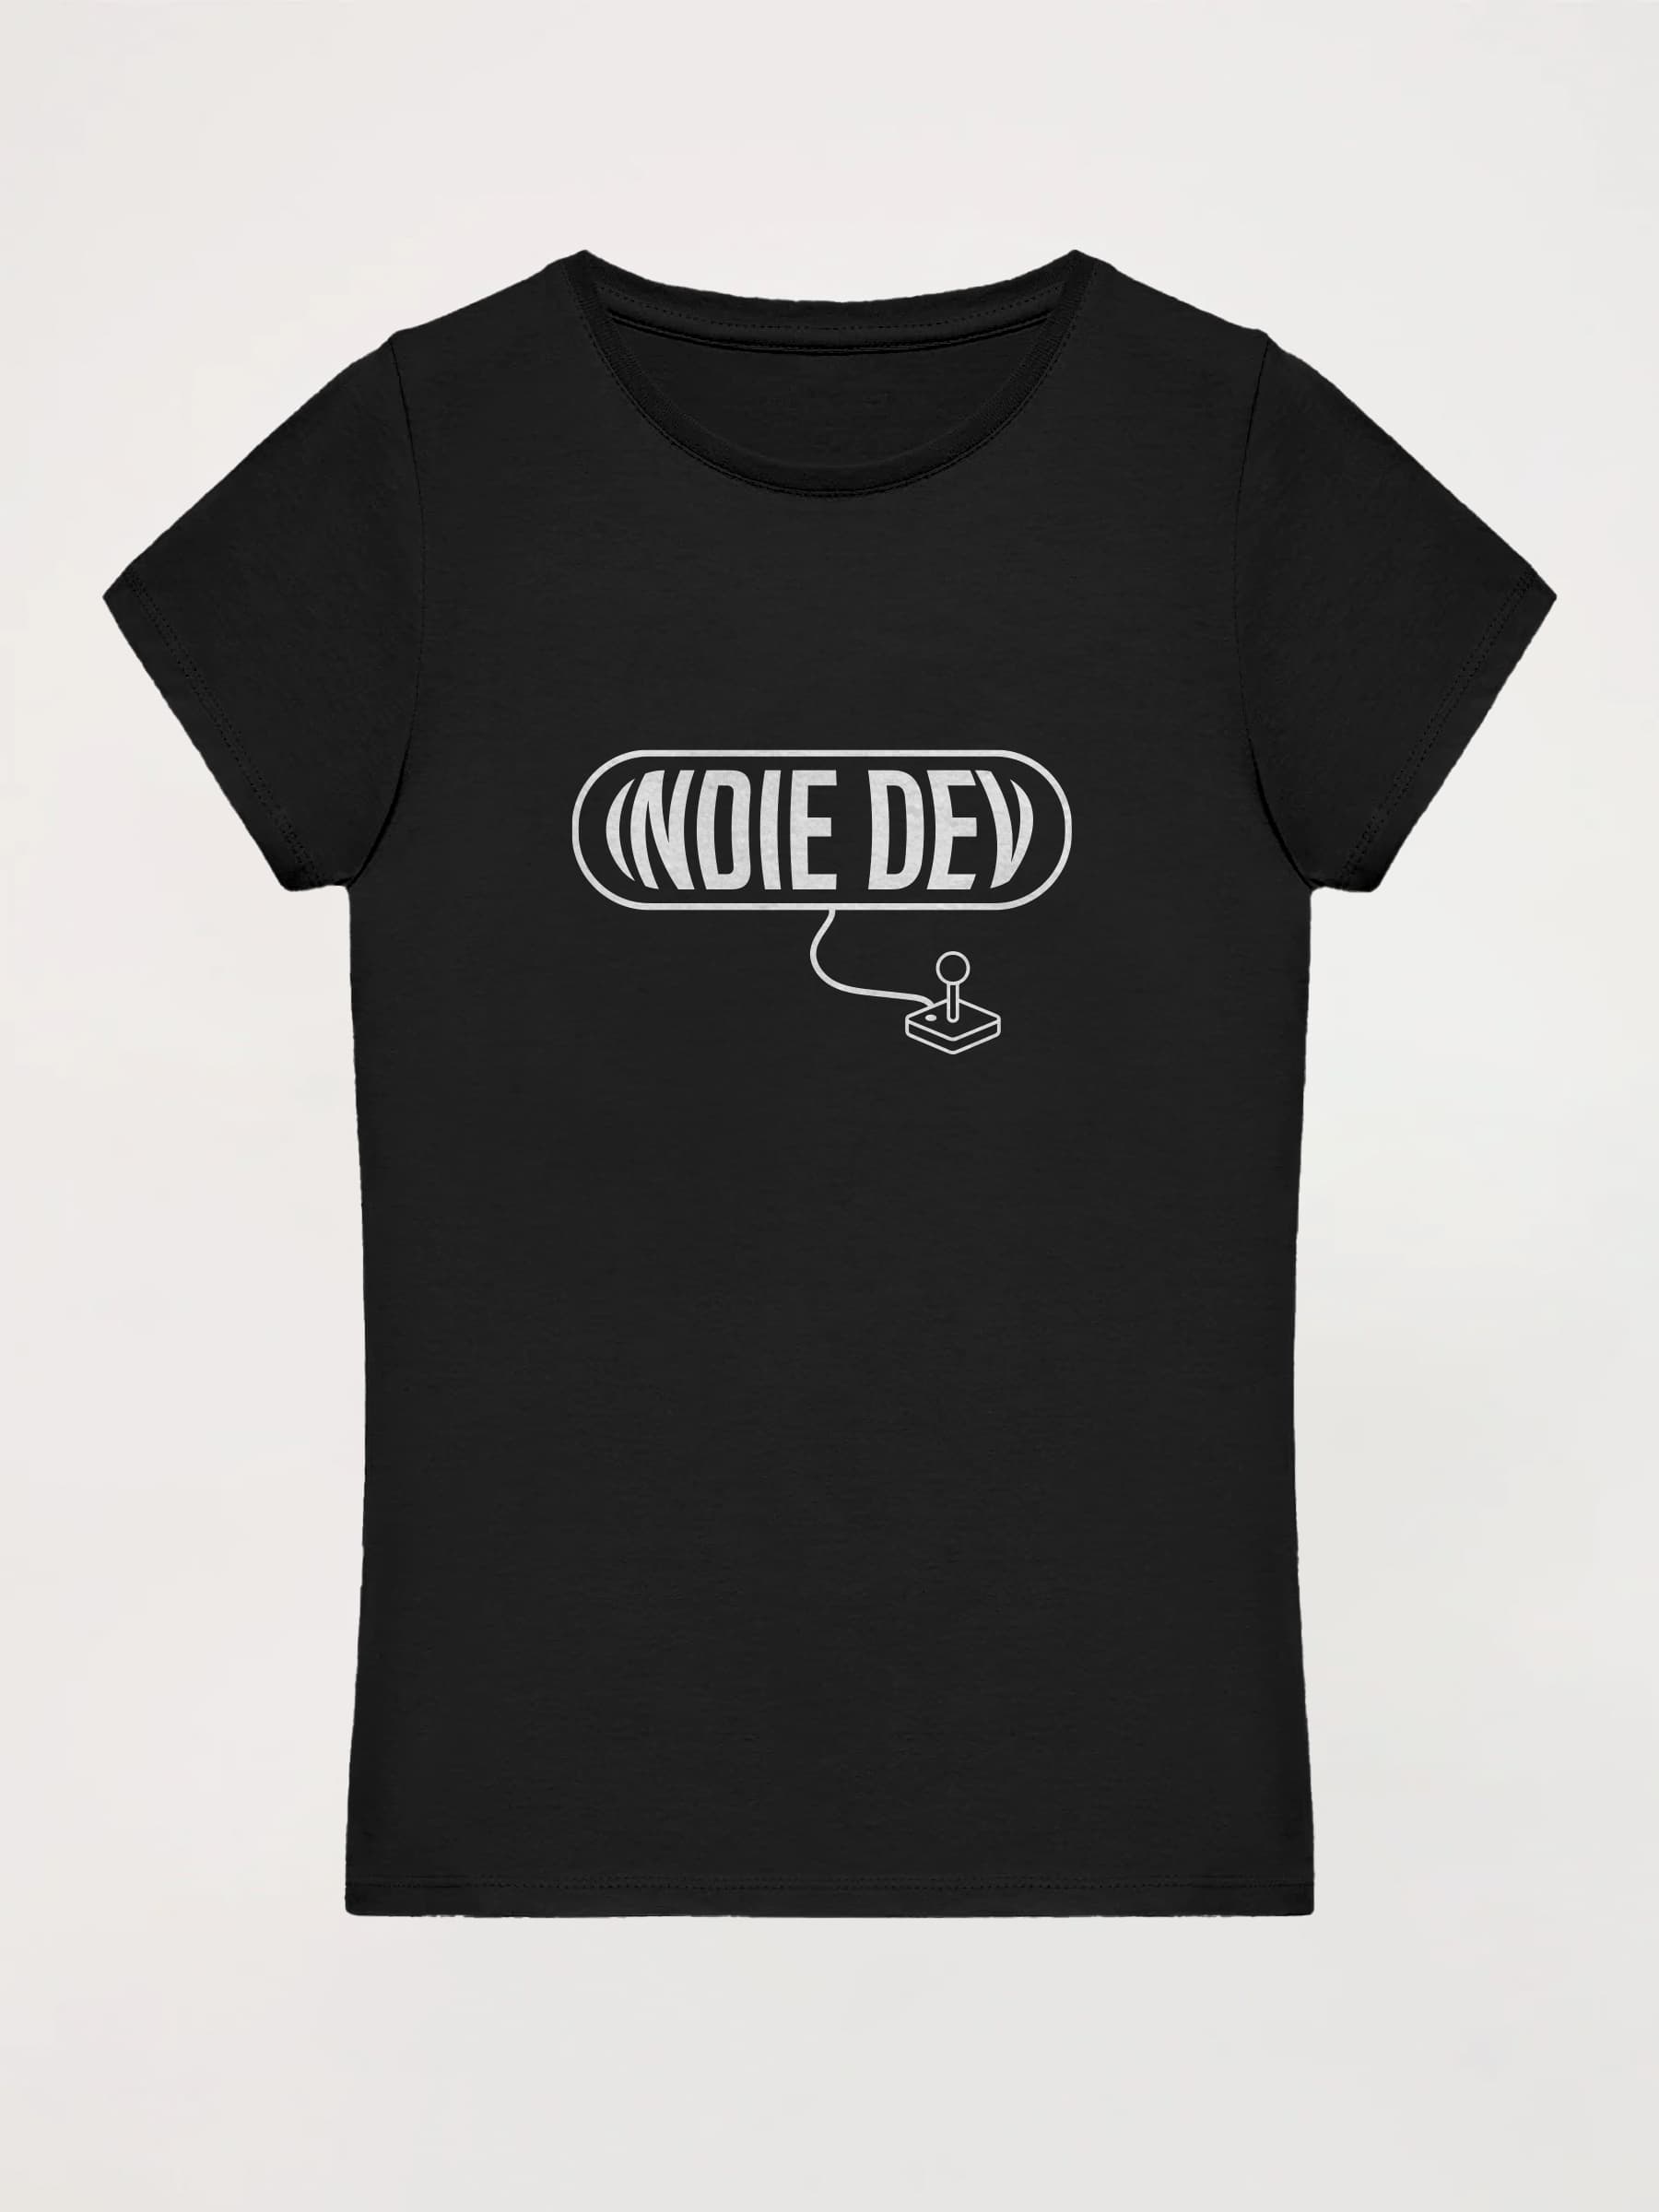 Camiseta mujer Indie Dev